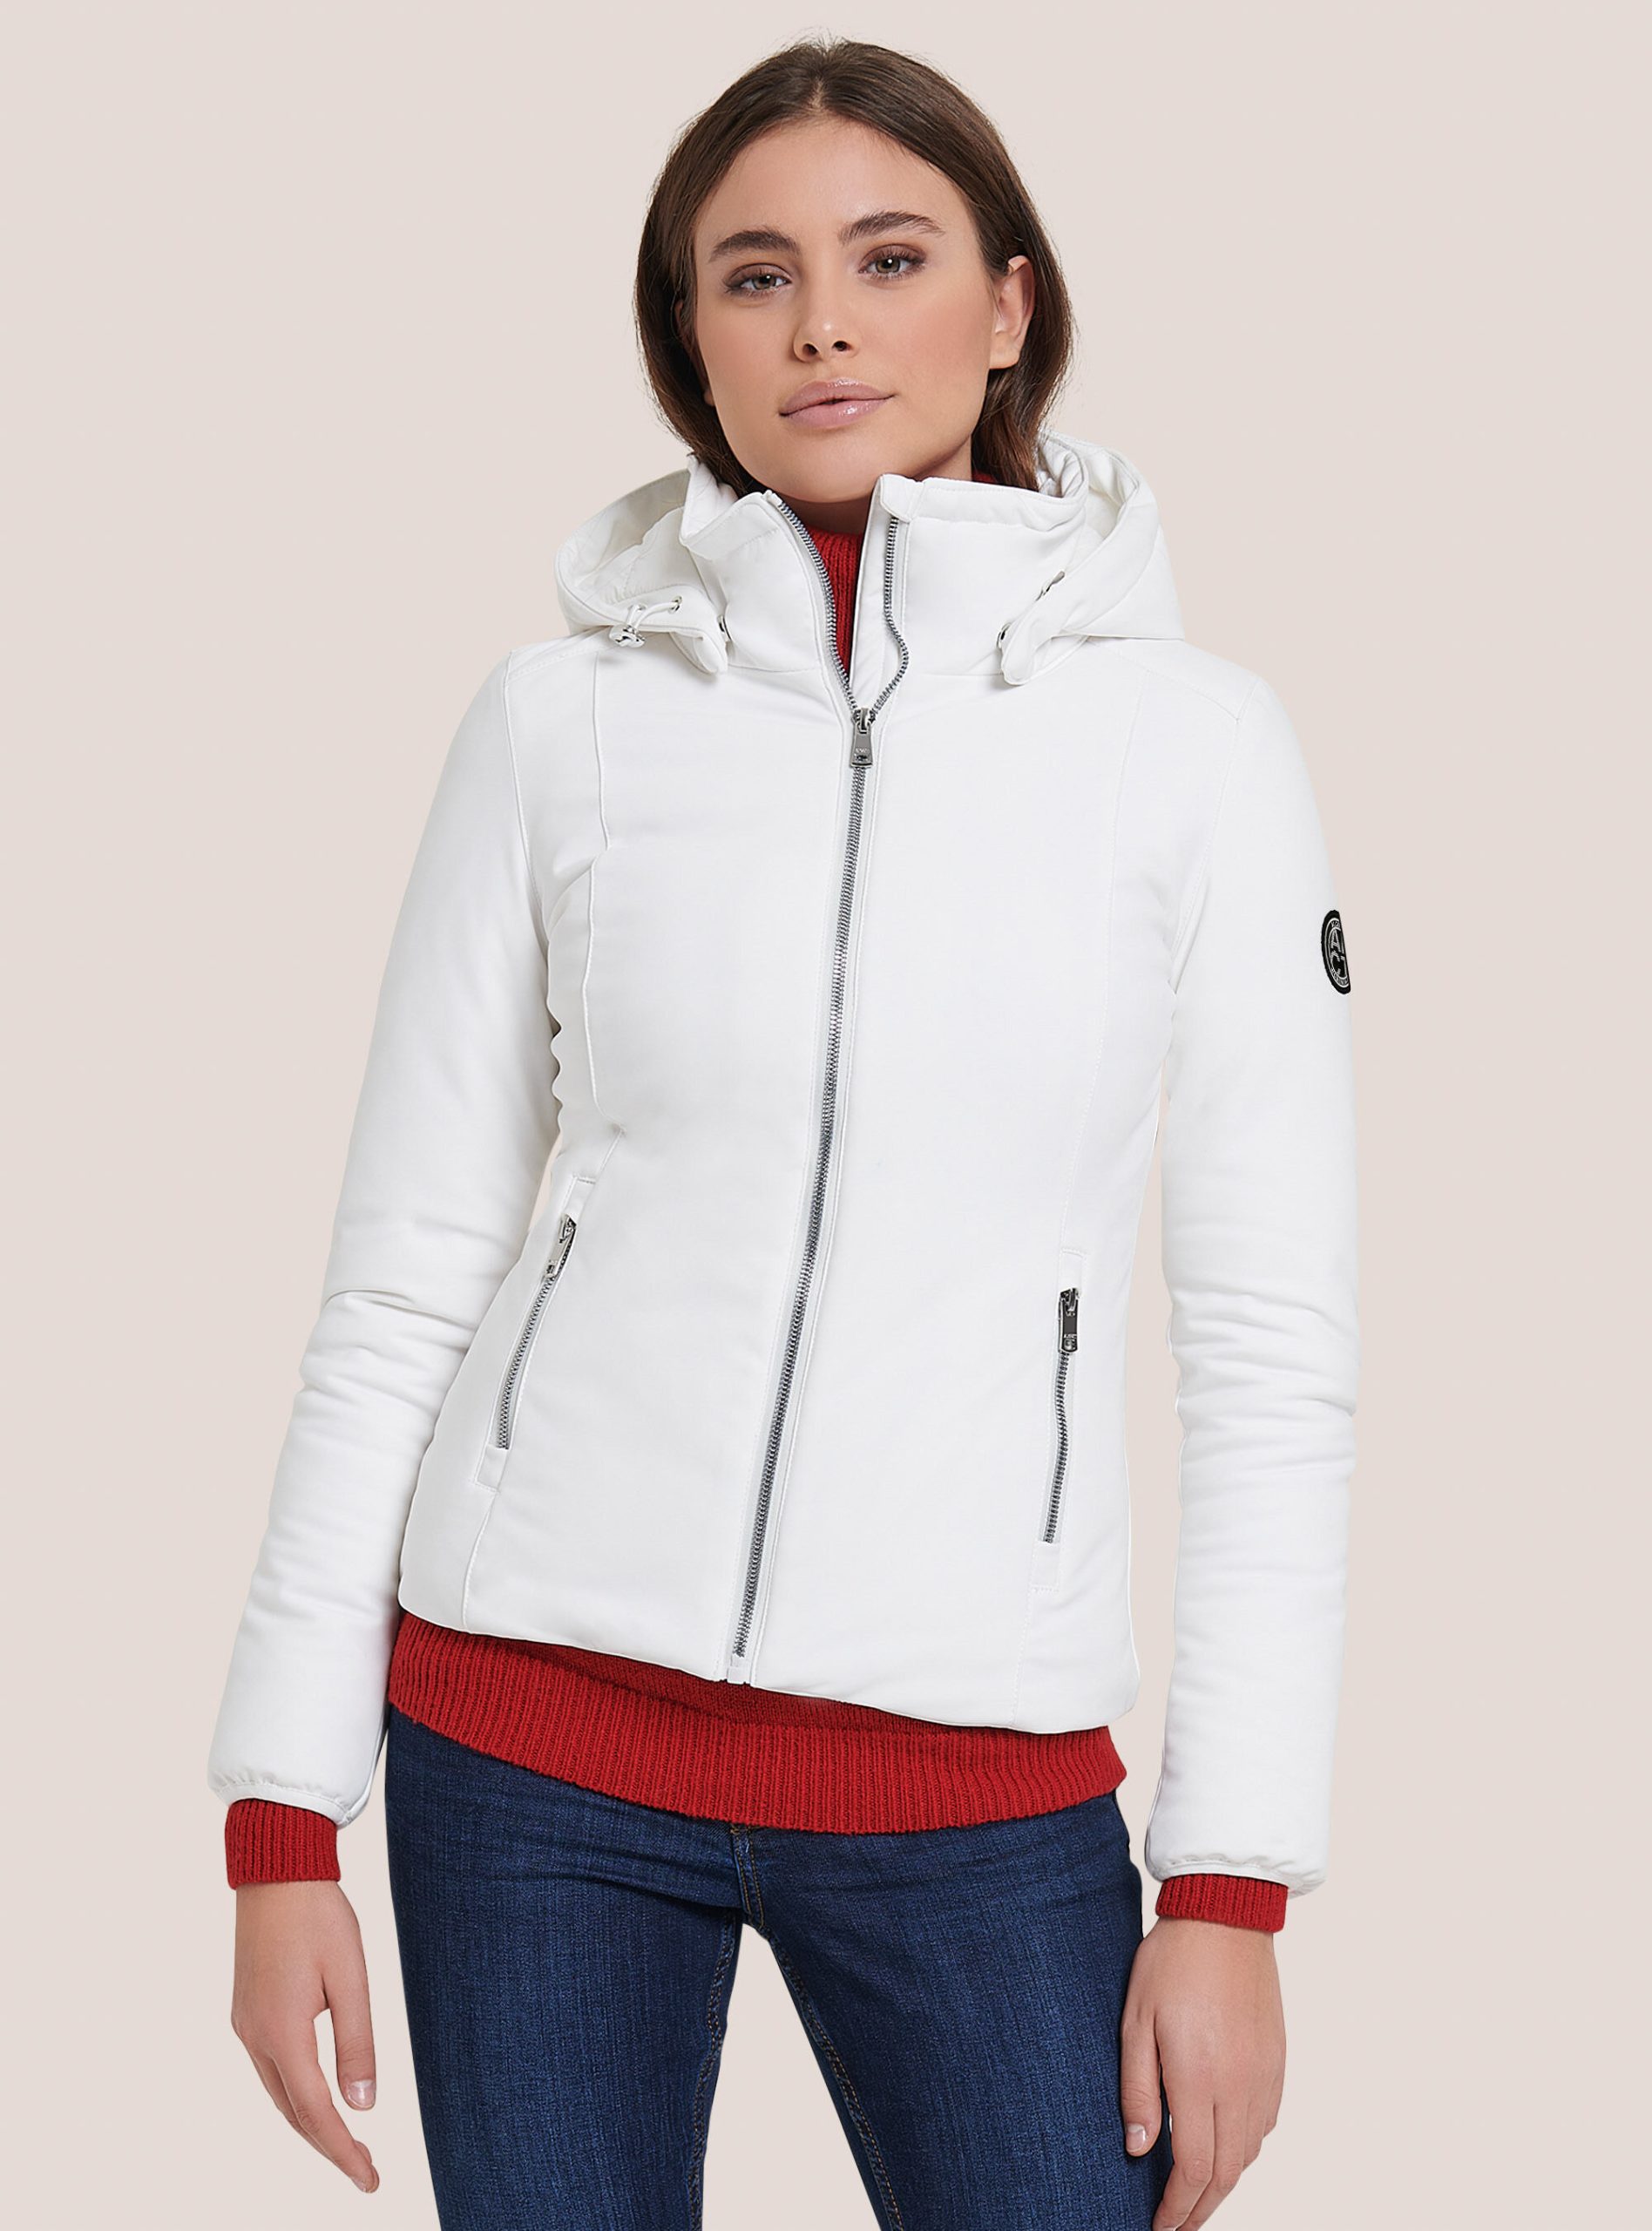 Frauen Fertigung Alcott Mäntel Und Jacken Wh3 White Technical Jacket With Recycled Padding – 1